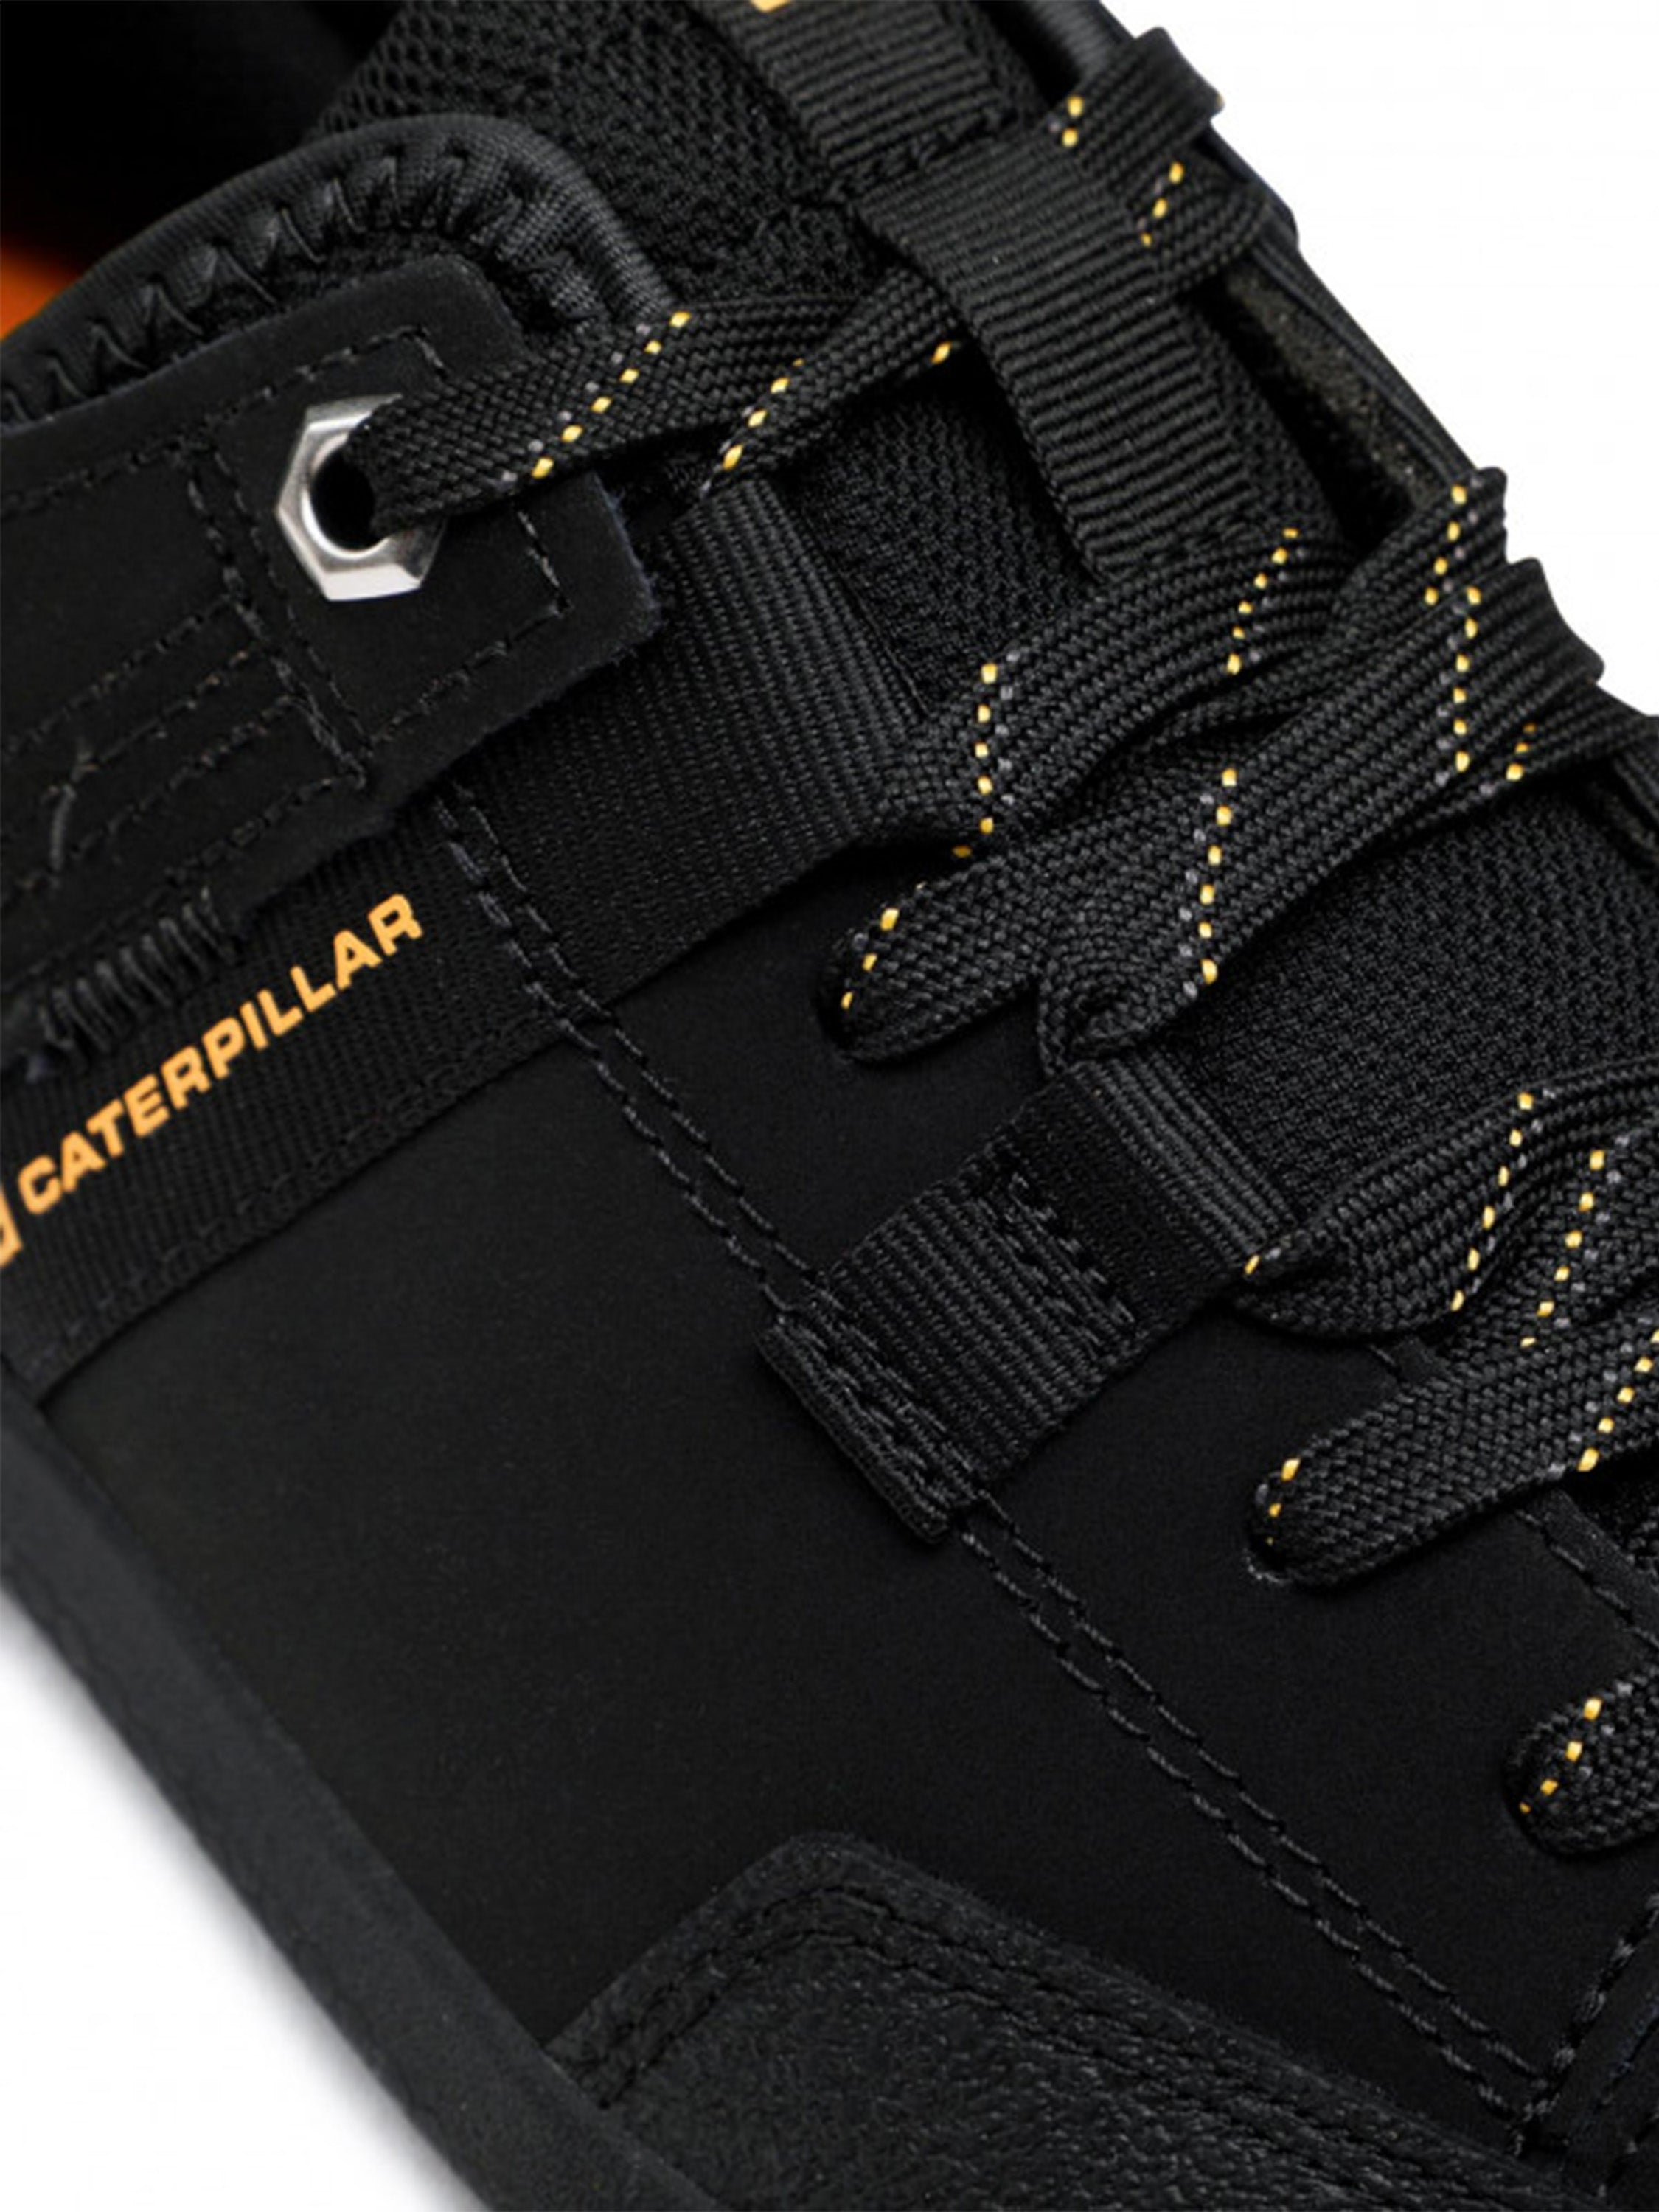 Caterpillar Men's Hex Tough Shoes #color_Black